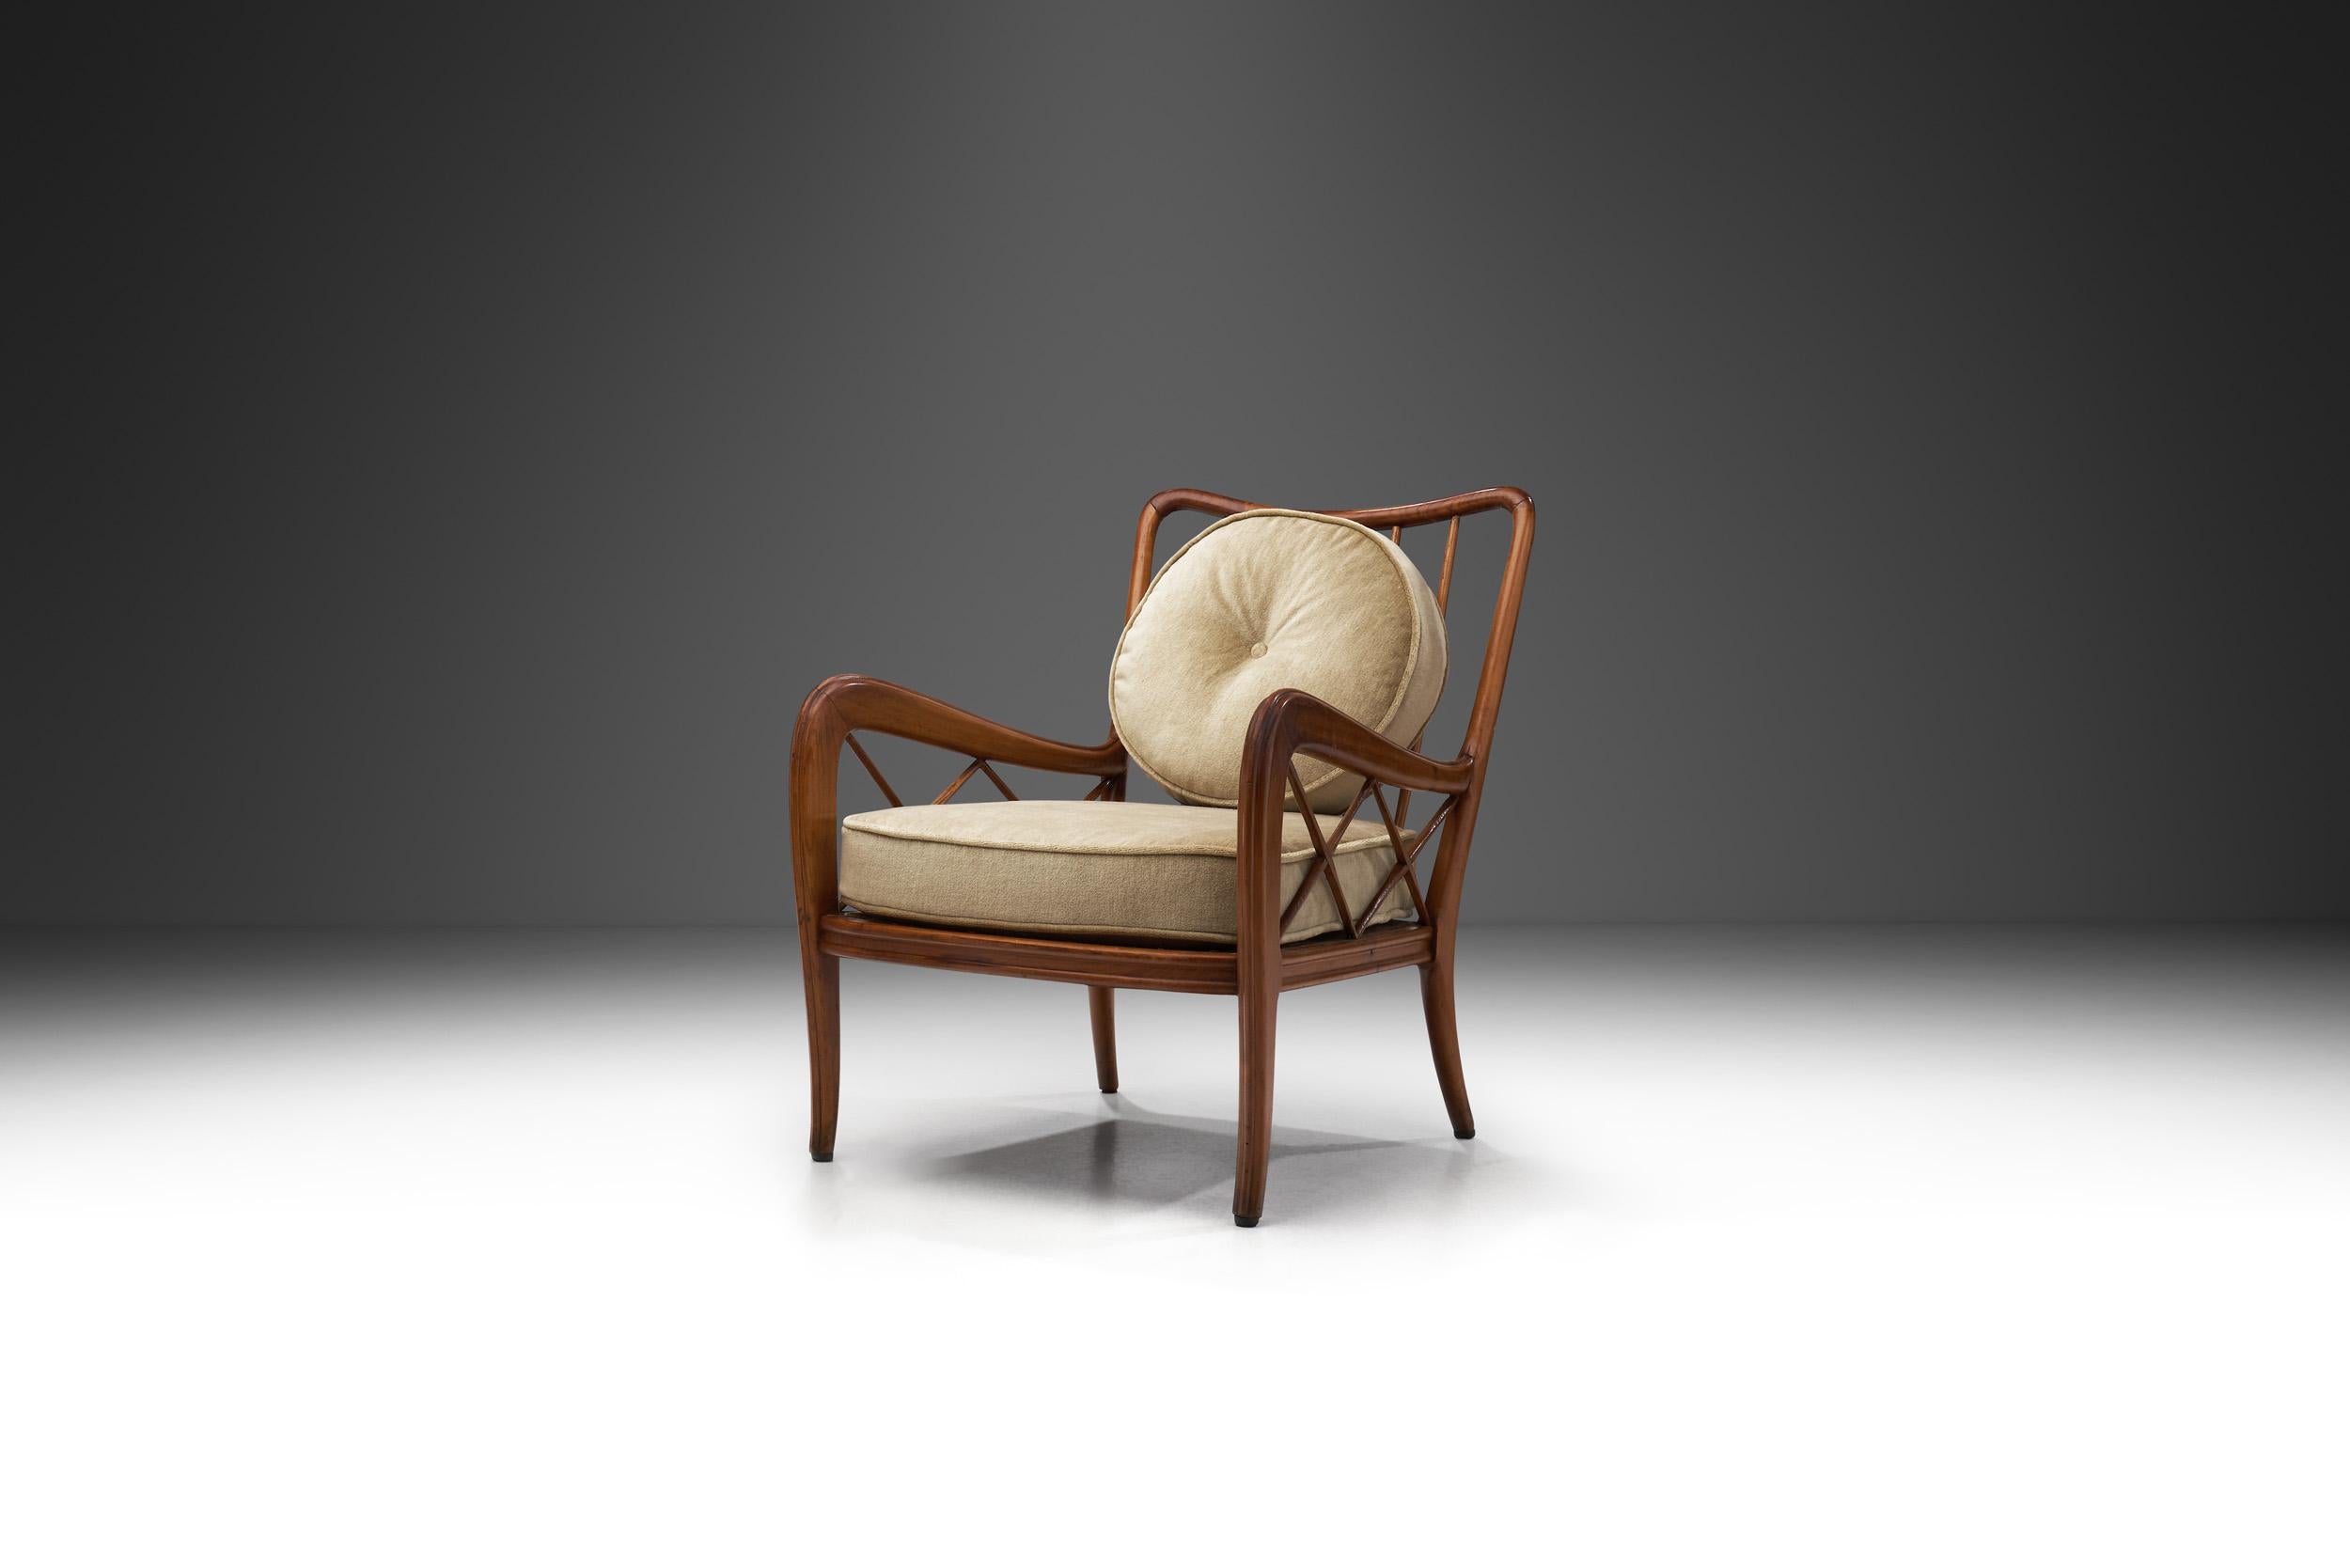 Die Möbel der italienischen Moderne zeichnen sich durch einzigartiges Design, perfekte Ausführung und Exklusivität aus. Dieser Loungesessel, der der italienischen Design-Ikone Paolo Buffa zugeschrieben wird, ist ein echtes Zeugnis der glorreichen